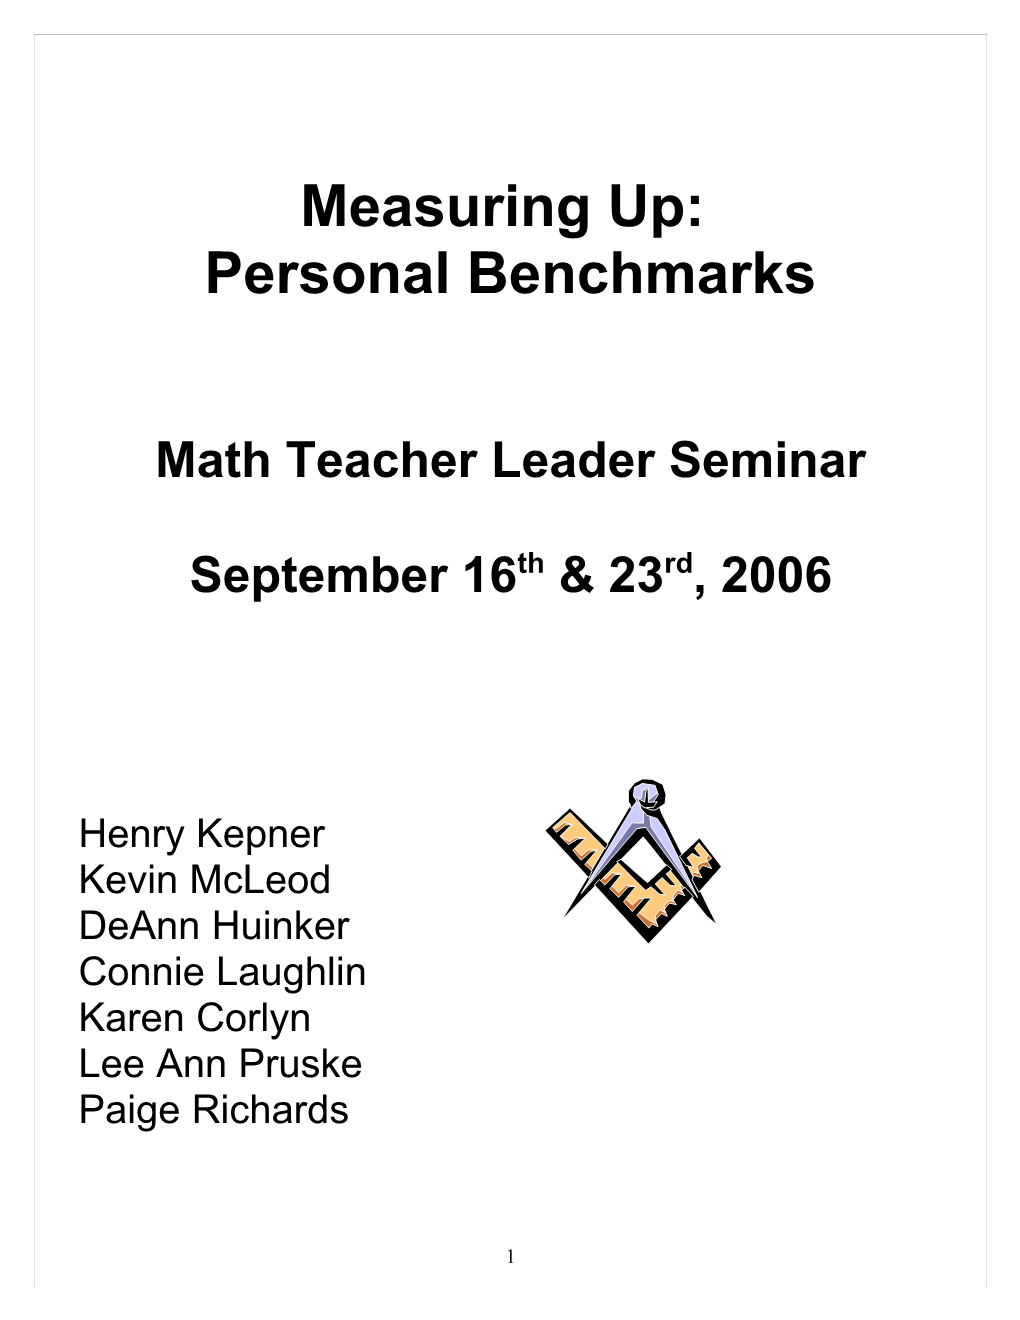 Math Teacher Leader Seminar